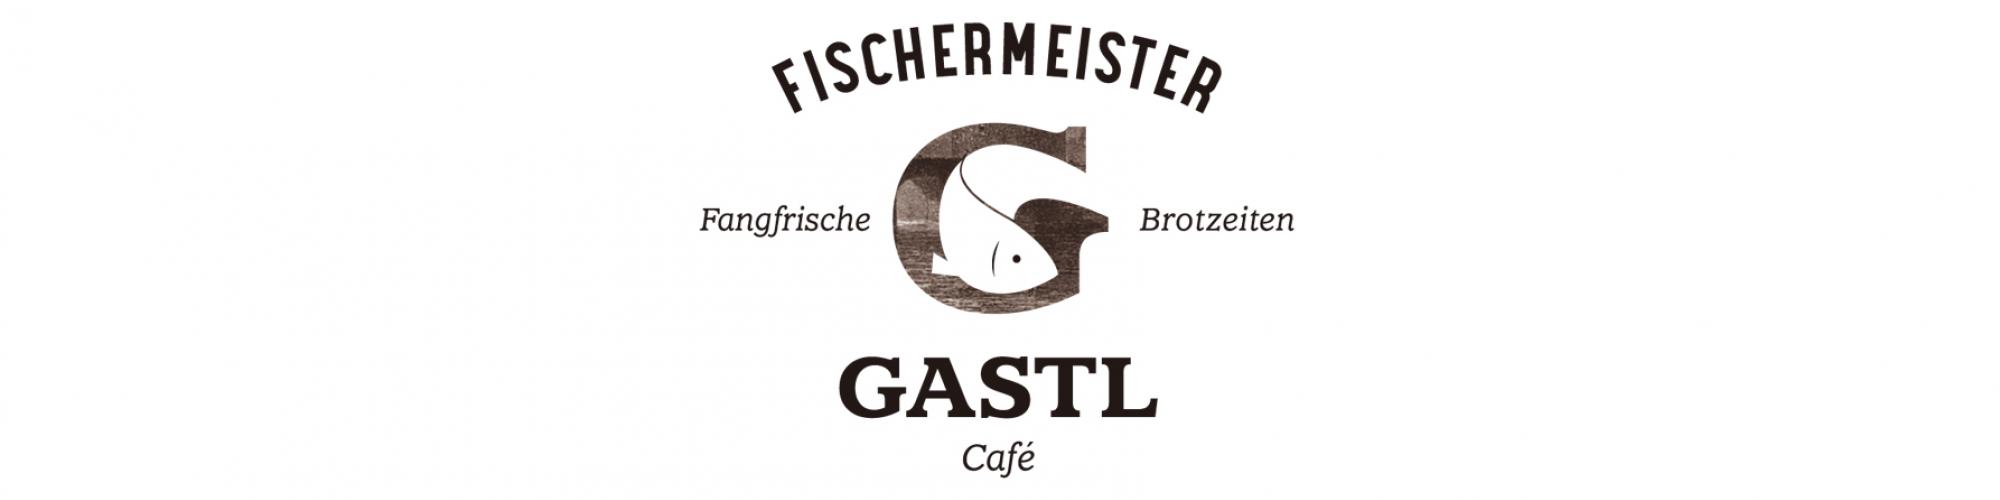 Fischermeister Gastl Café